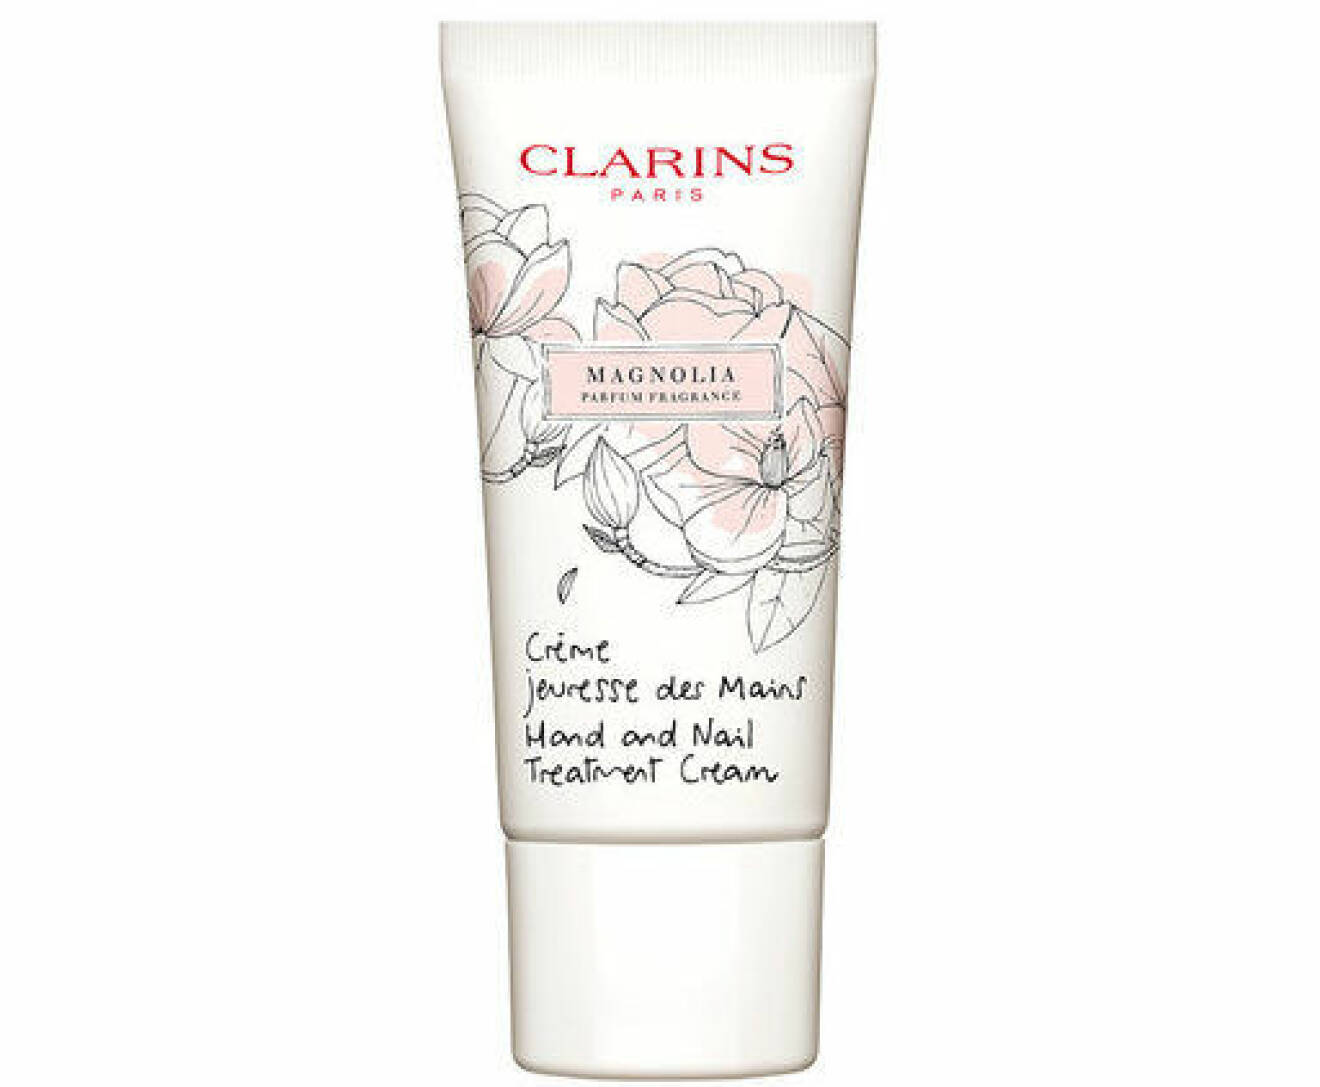 En bild på den återfuktande handkrämen Clarins – Hand And Nail Treatment Cream Magnolia som säljs på Åhlens.